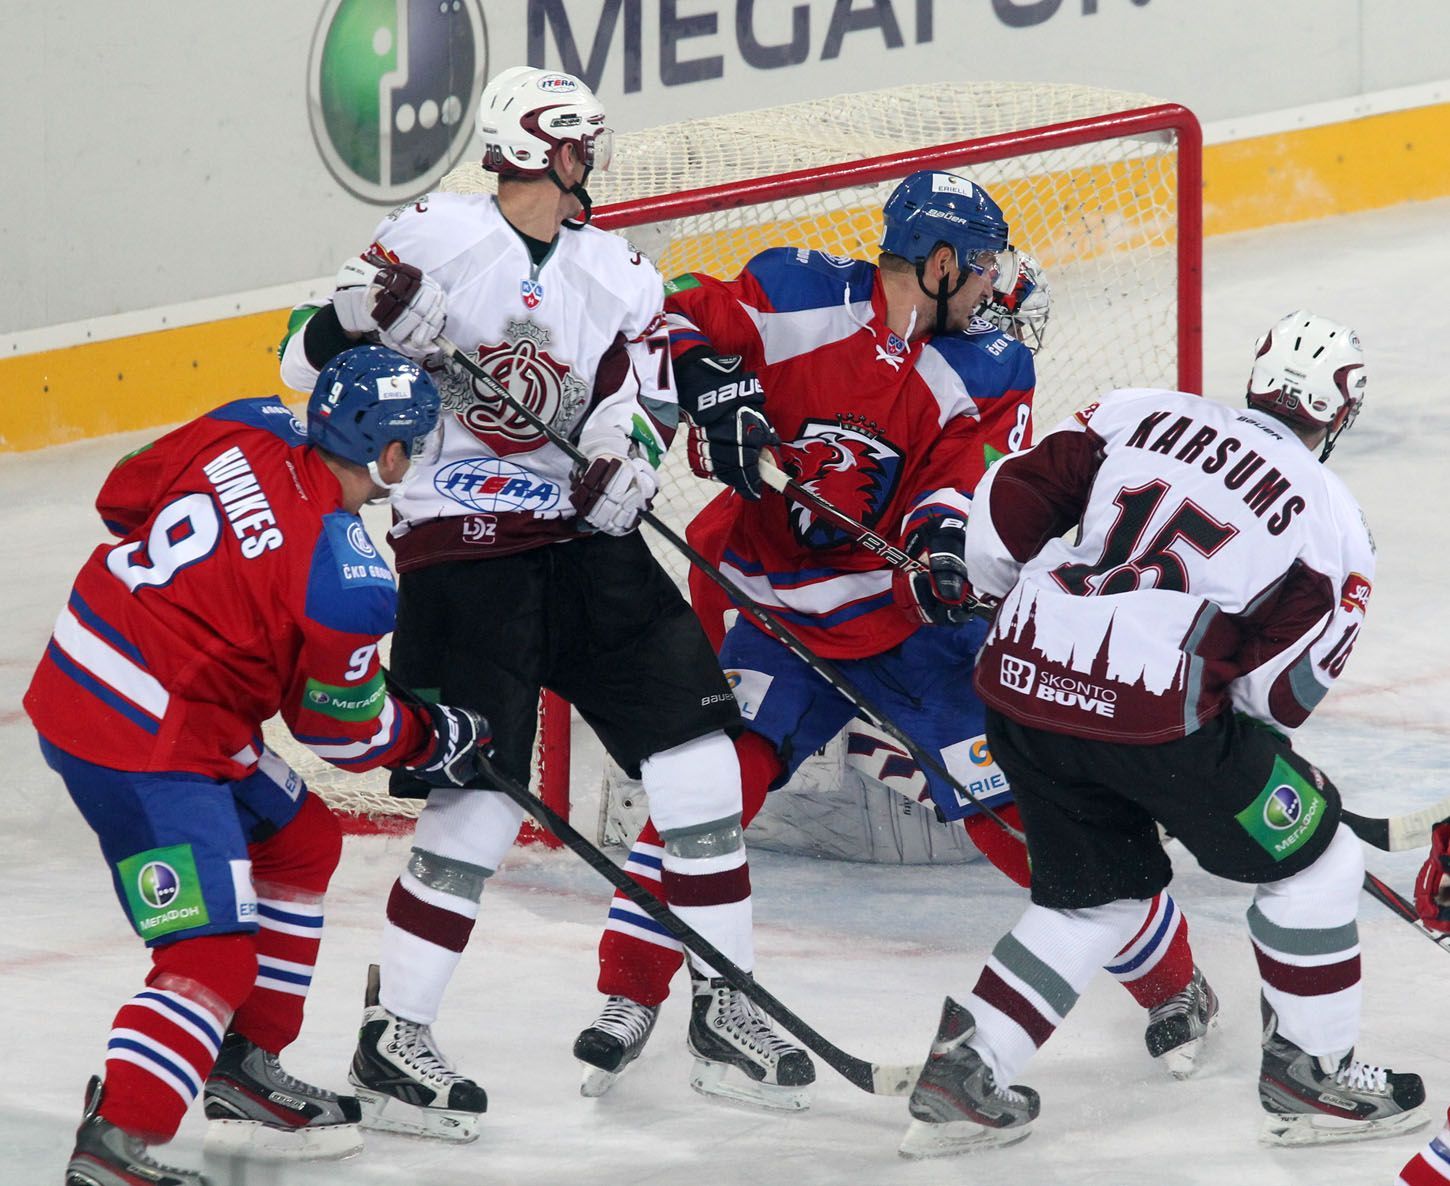 Hokejisté Jiří Hunkes (vlevo) a Michal Sersen (druhý zprava) se snaží bránit Martinse Karsumse (vpravo) v utkání KHL 2012/13 mezi Lvem Praha s Dinamem Riga .